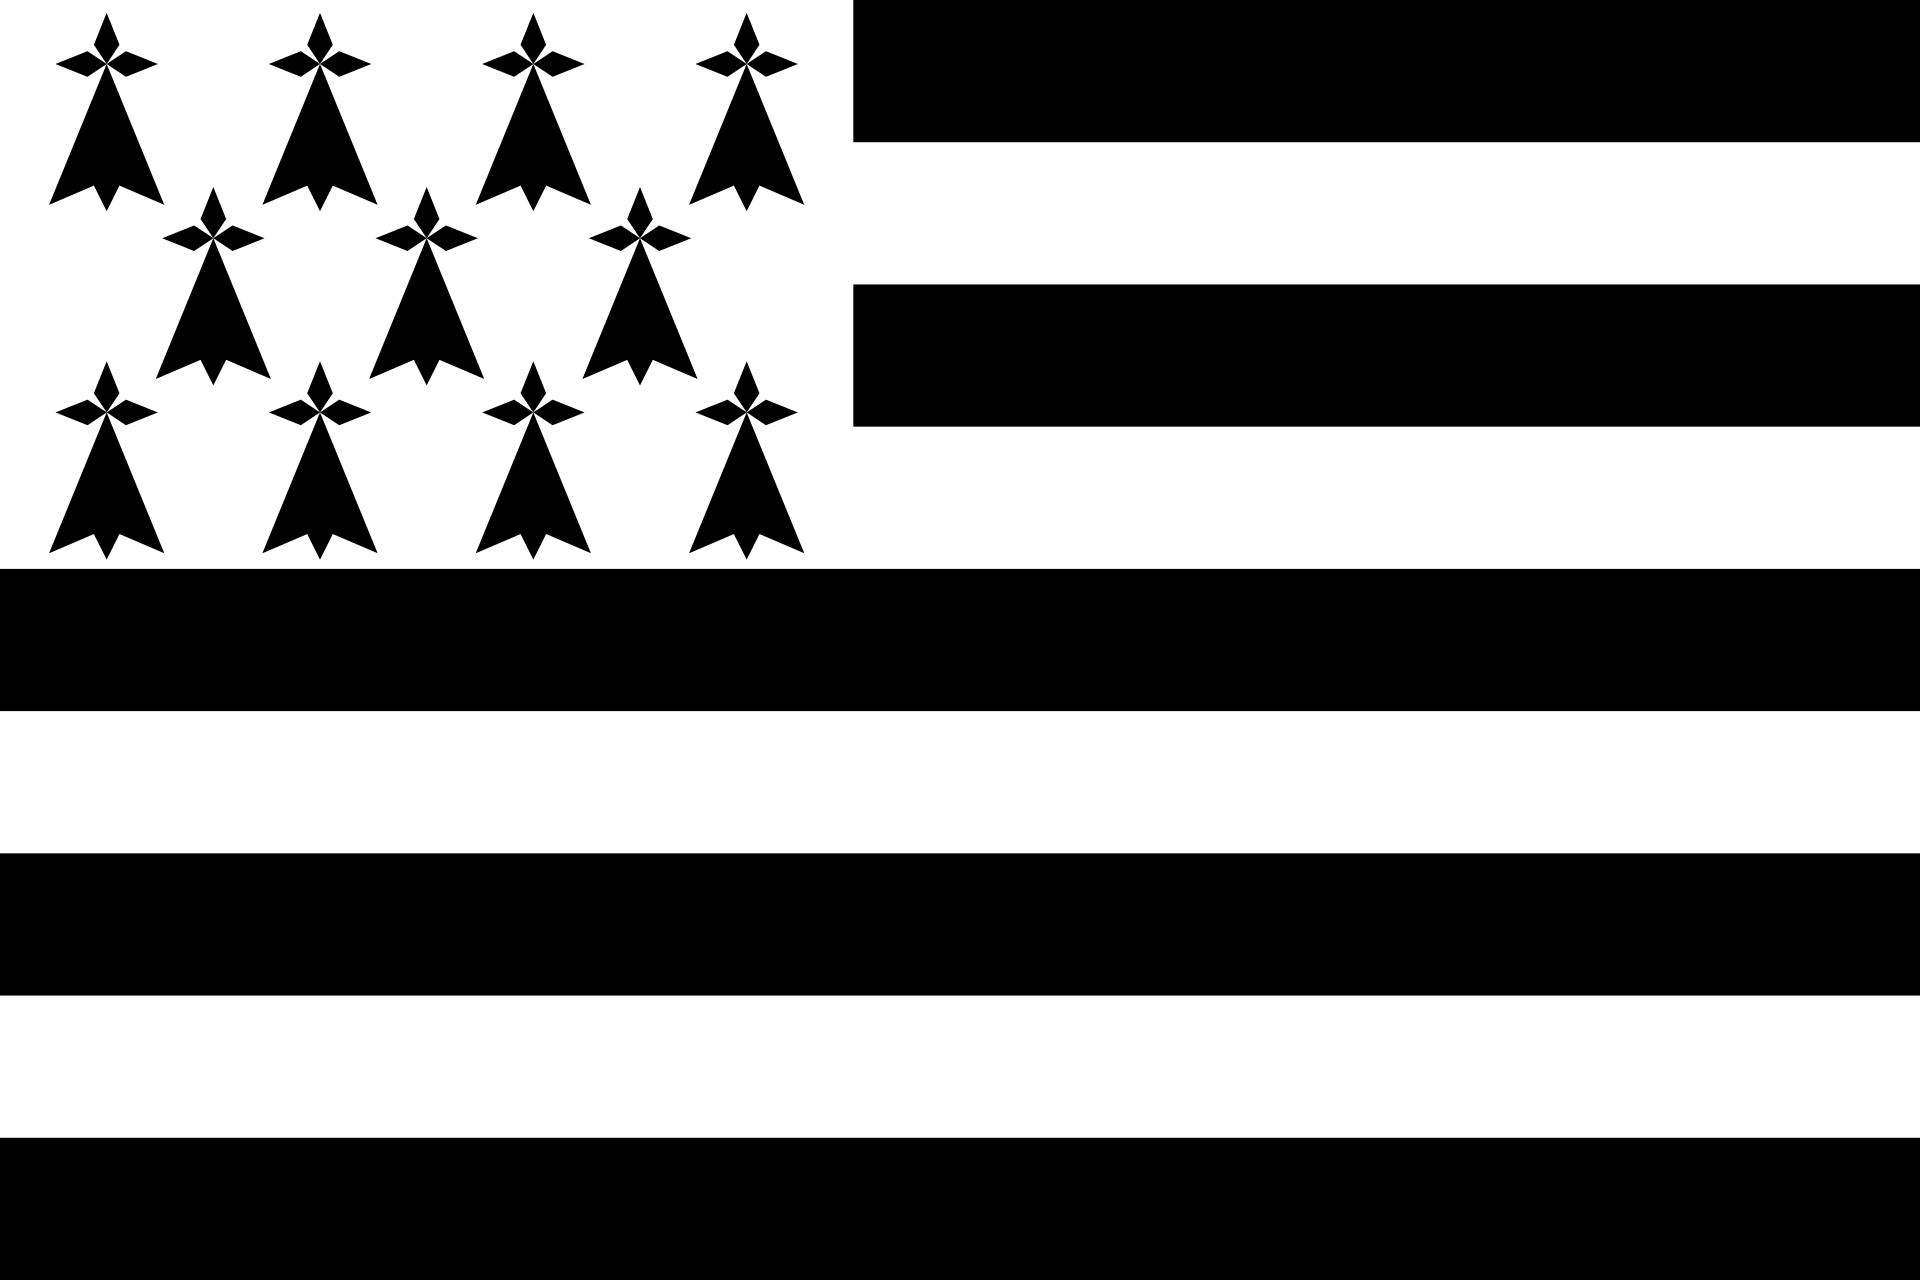 Brittany (administrative region) - Wikipedia